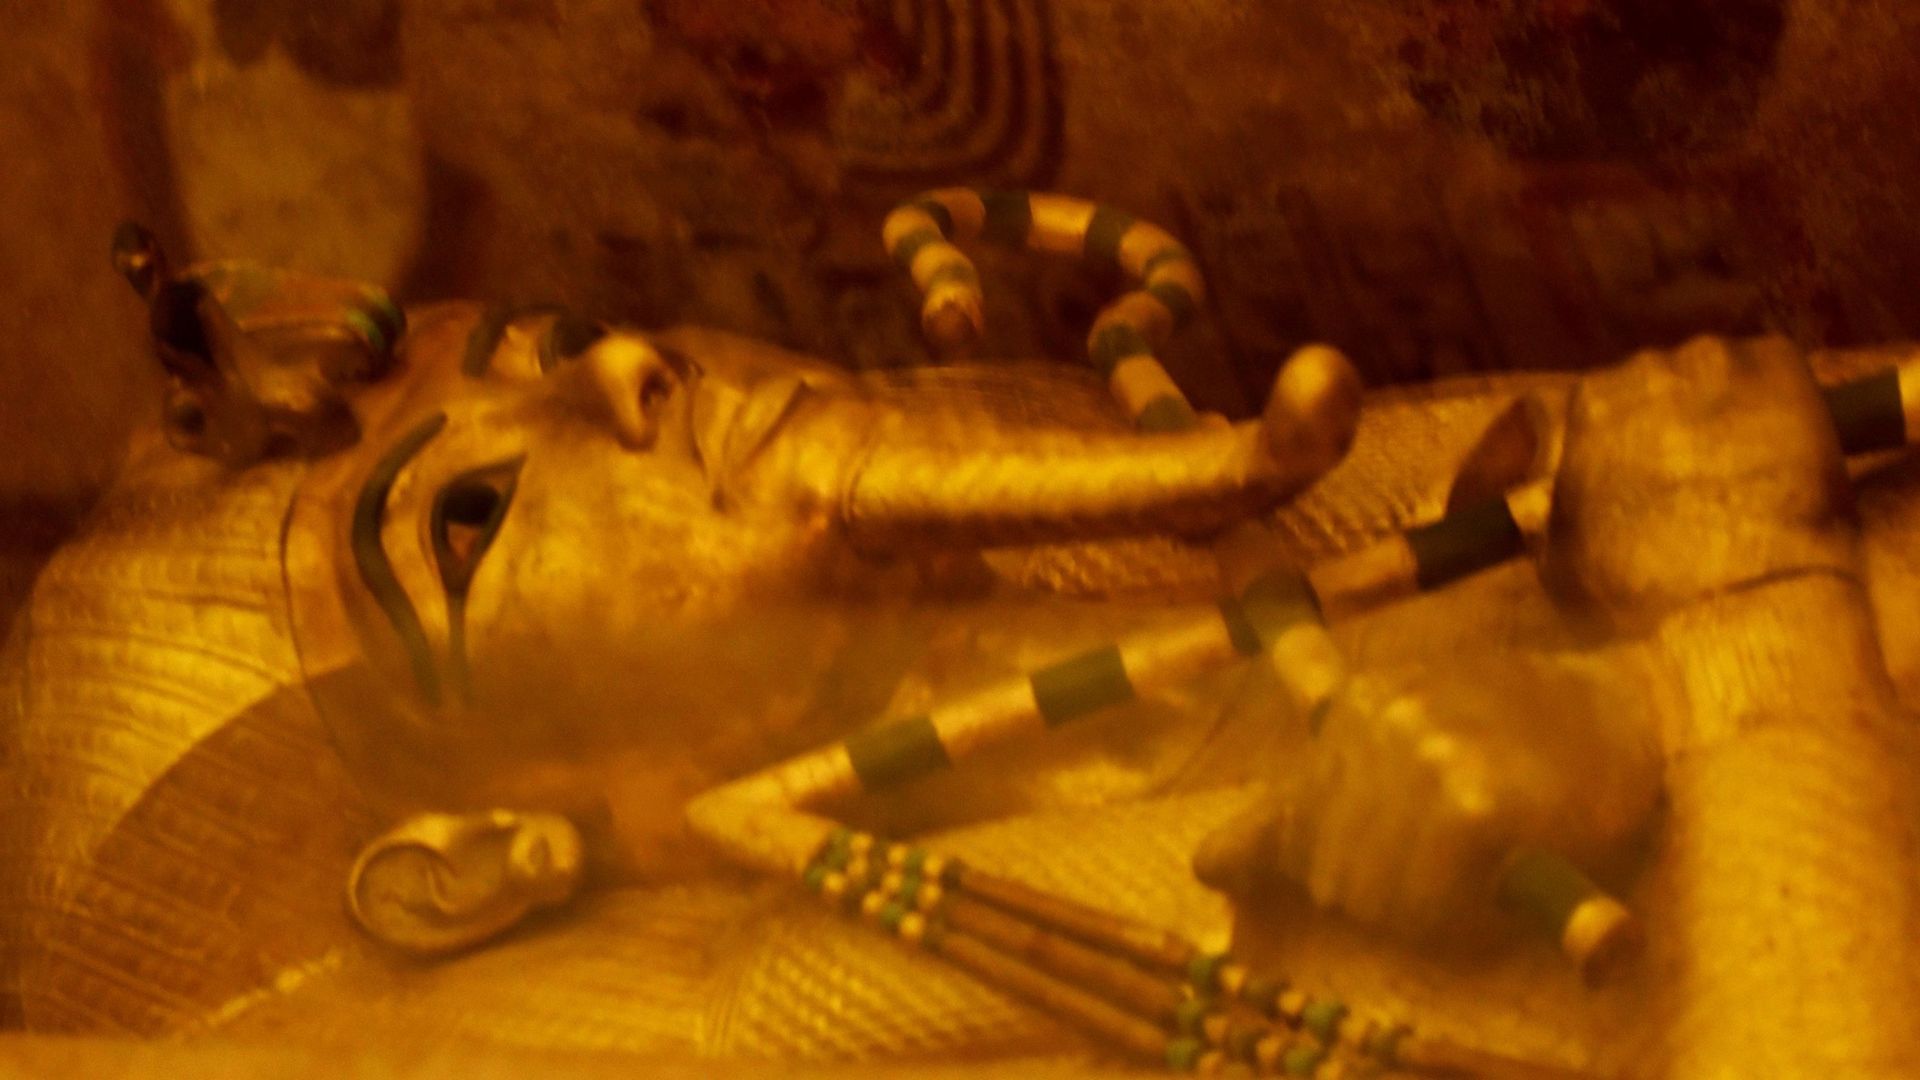 exposition-toutankhamon-une-immersion-dans-le-mystere-d-un-jeune-pharaon-ephemere